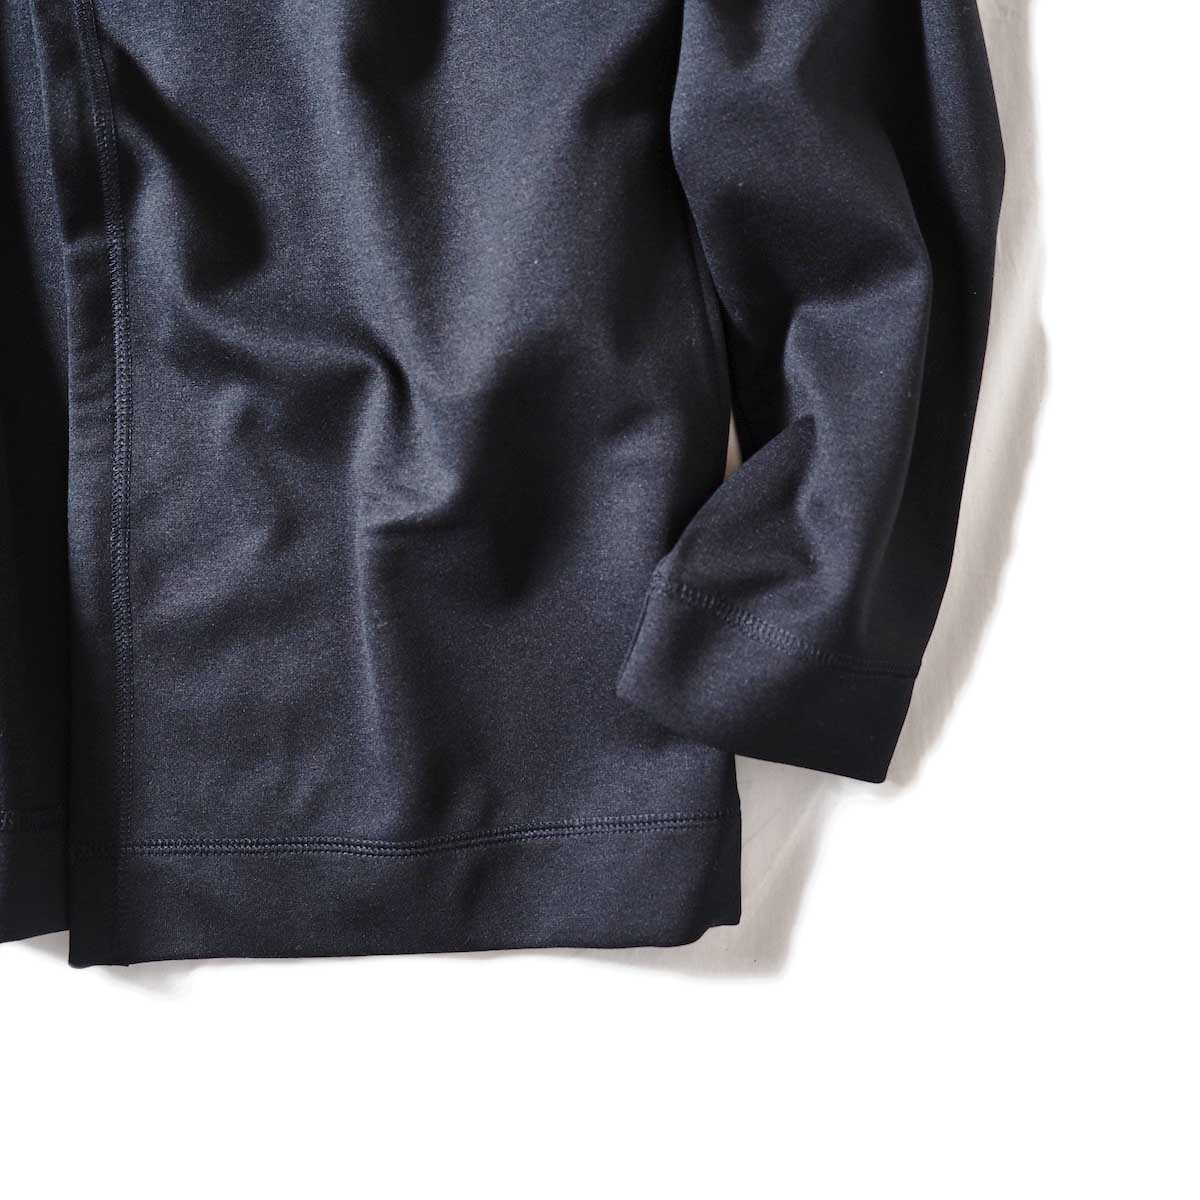 N.HOOLYWOOD / 18RCH-090 SHORT CARDIGAN (Black)袖、裾